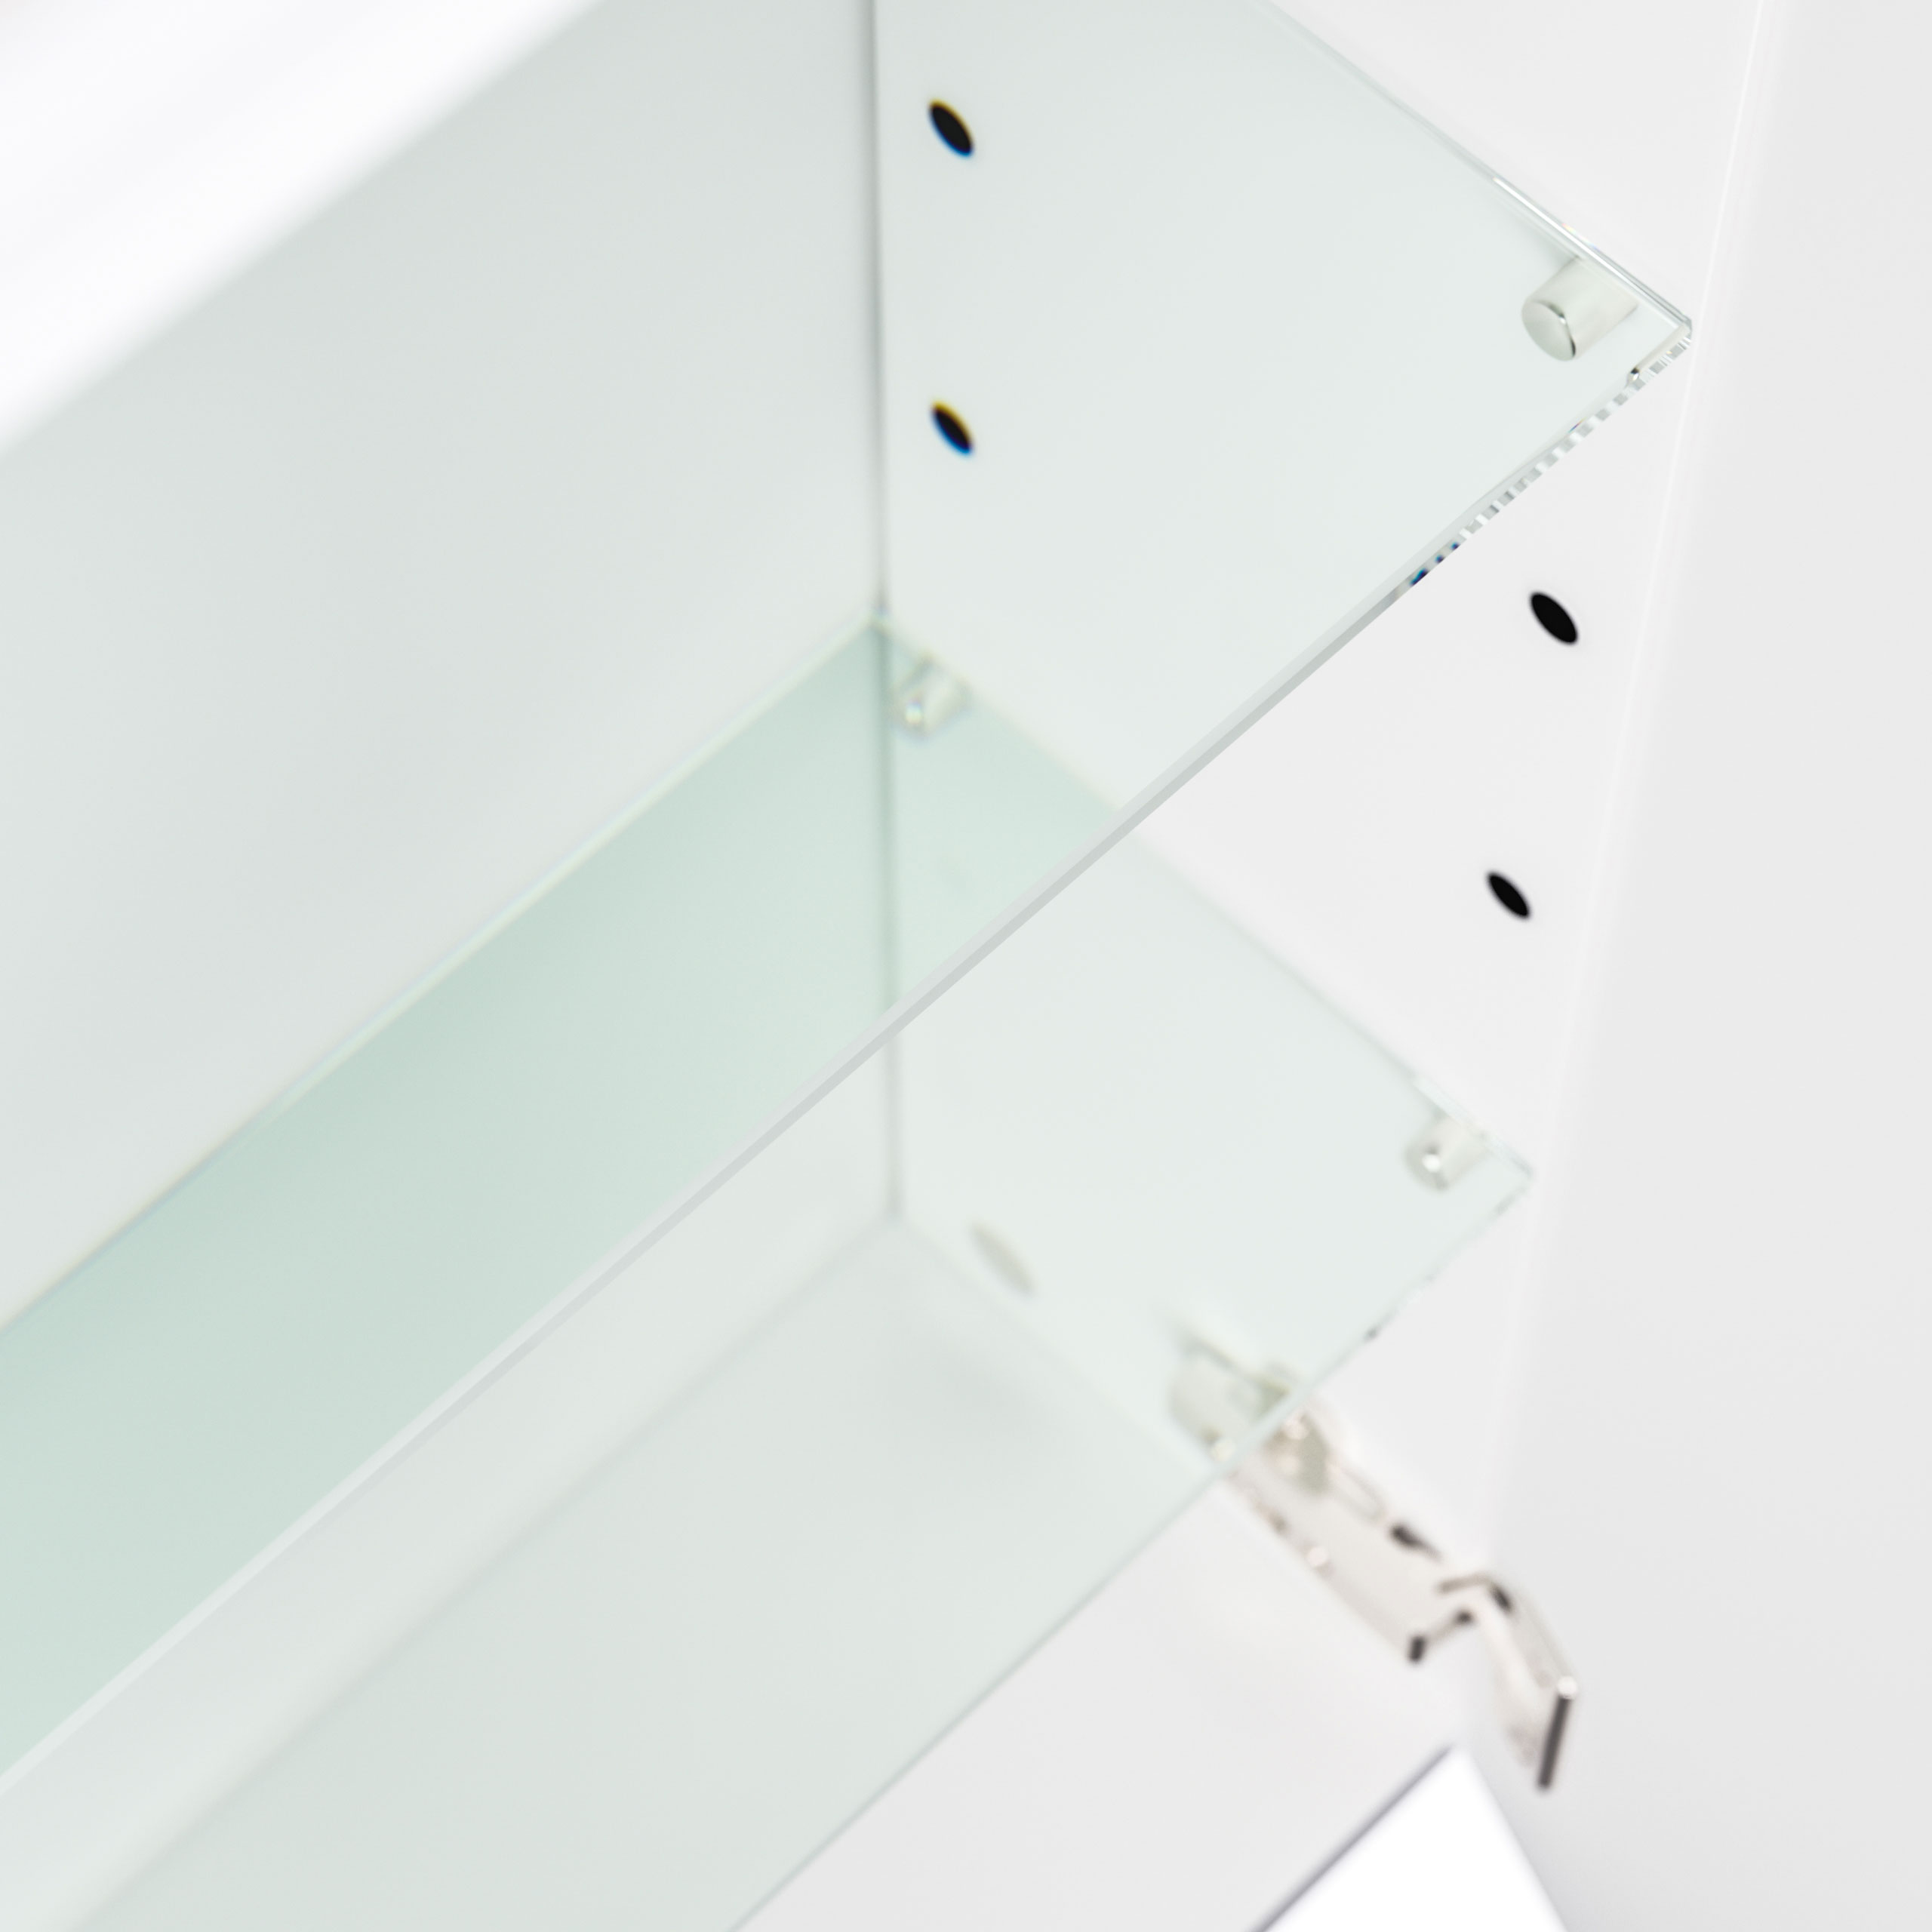 Spiegelschrank 140cm inkl. Design Acryl-Lampe und Glasböden weiss hochglanz